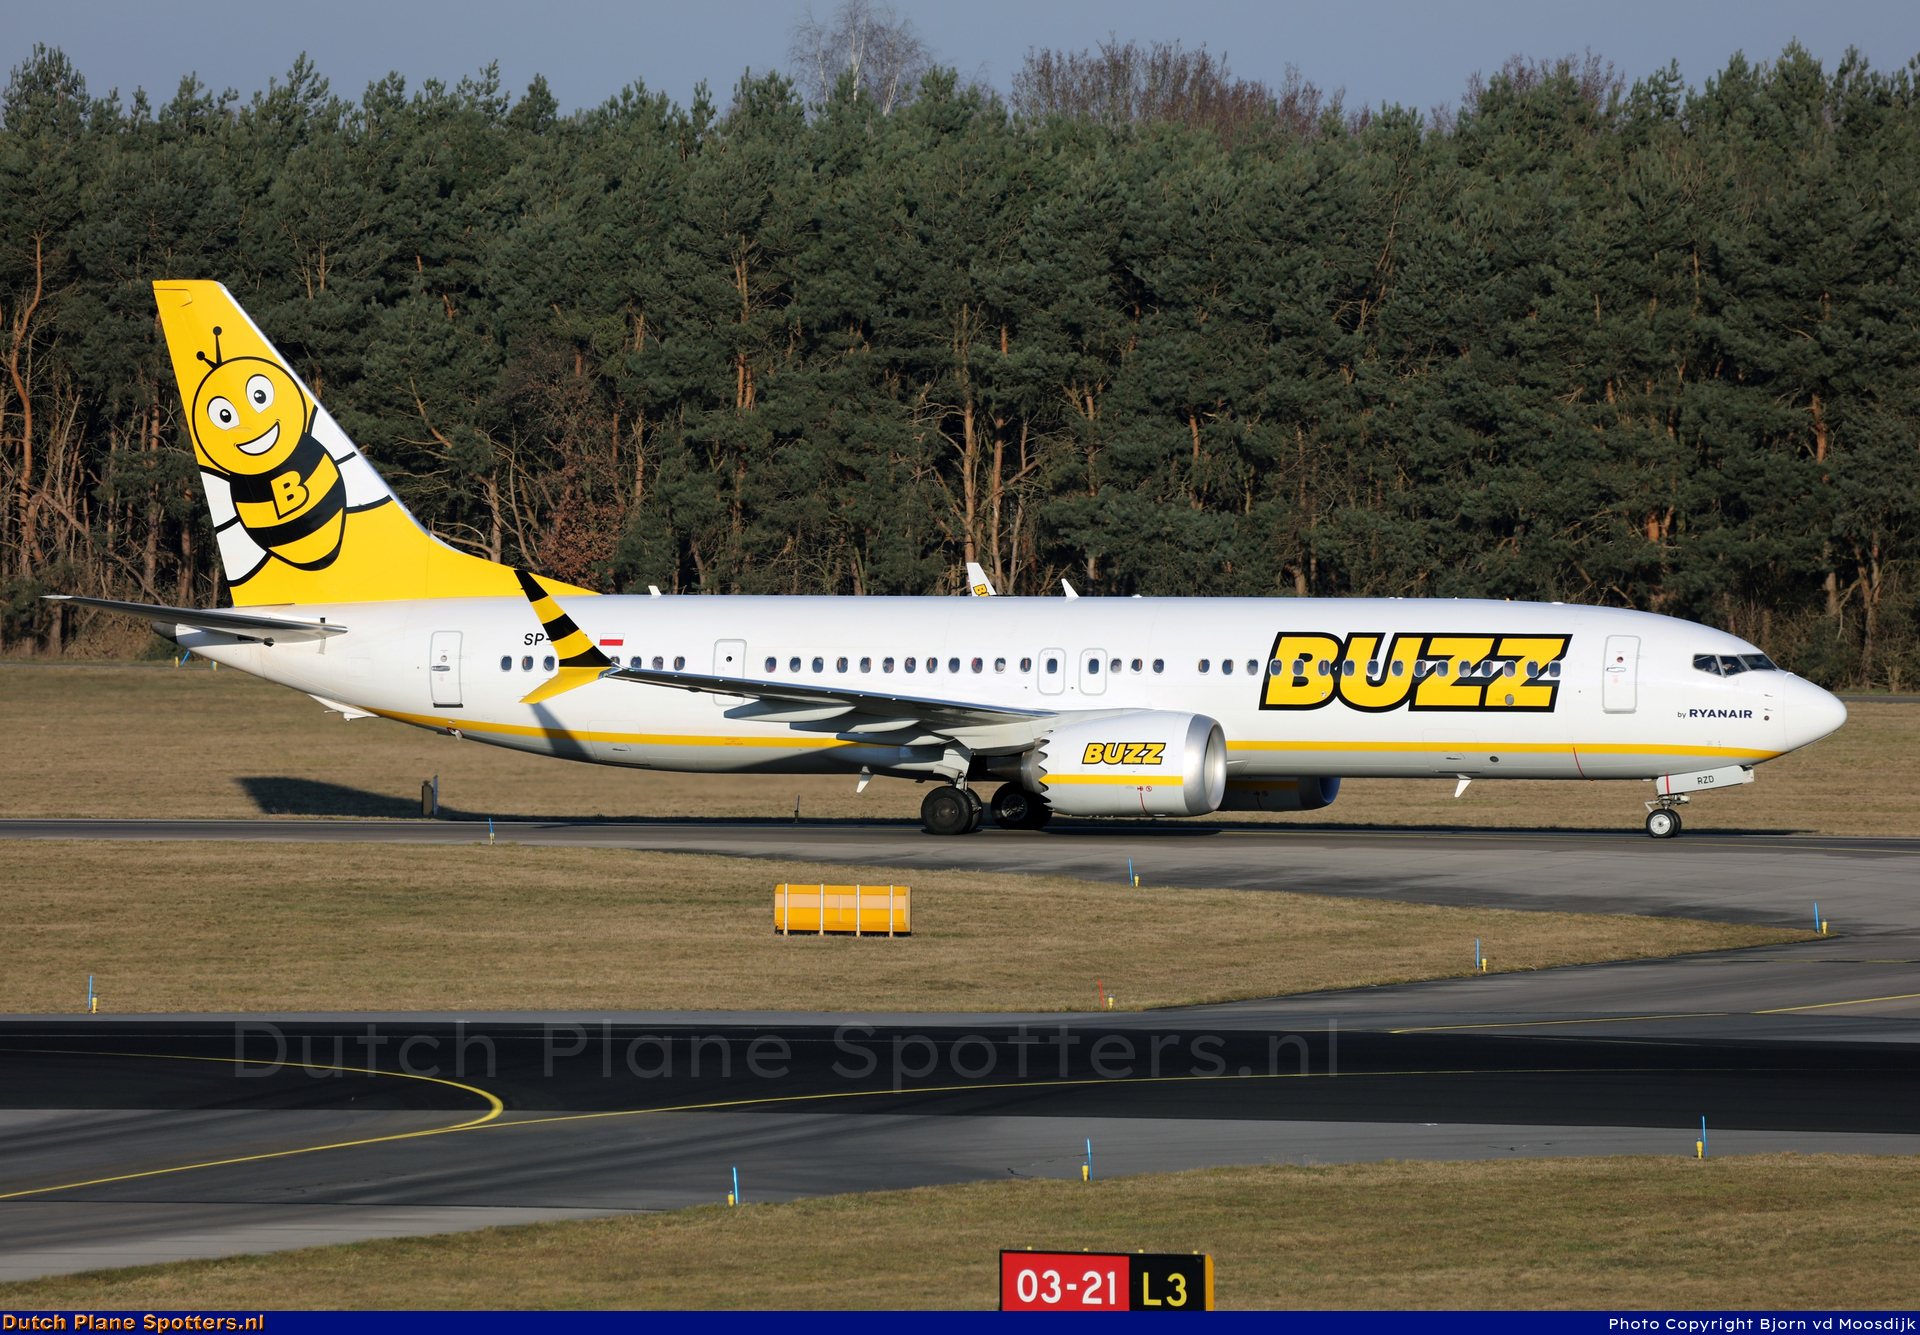 SP-RZD Boeing 737 MAX 8-200 Buzz (Ryanair) by Bjorn van de Moosdijk